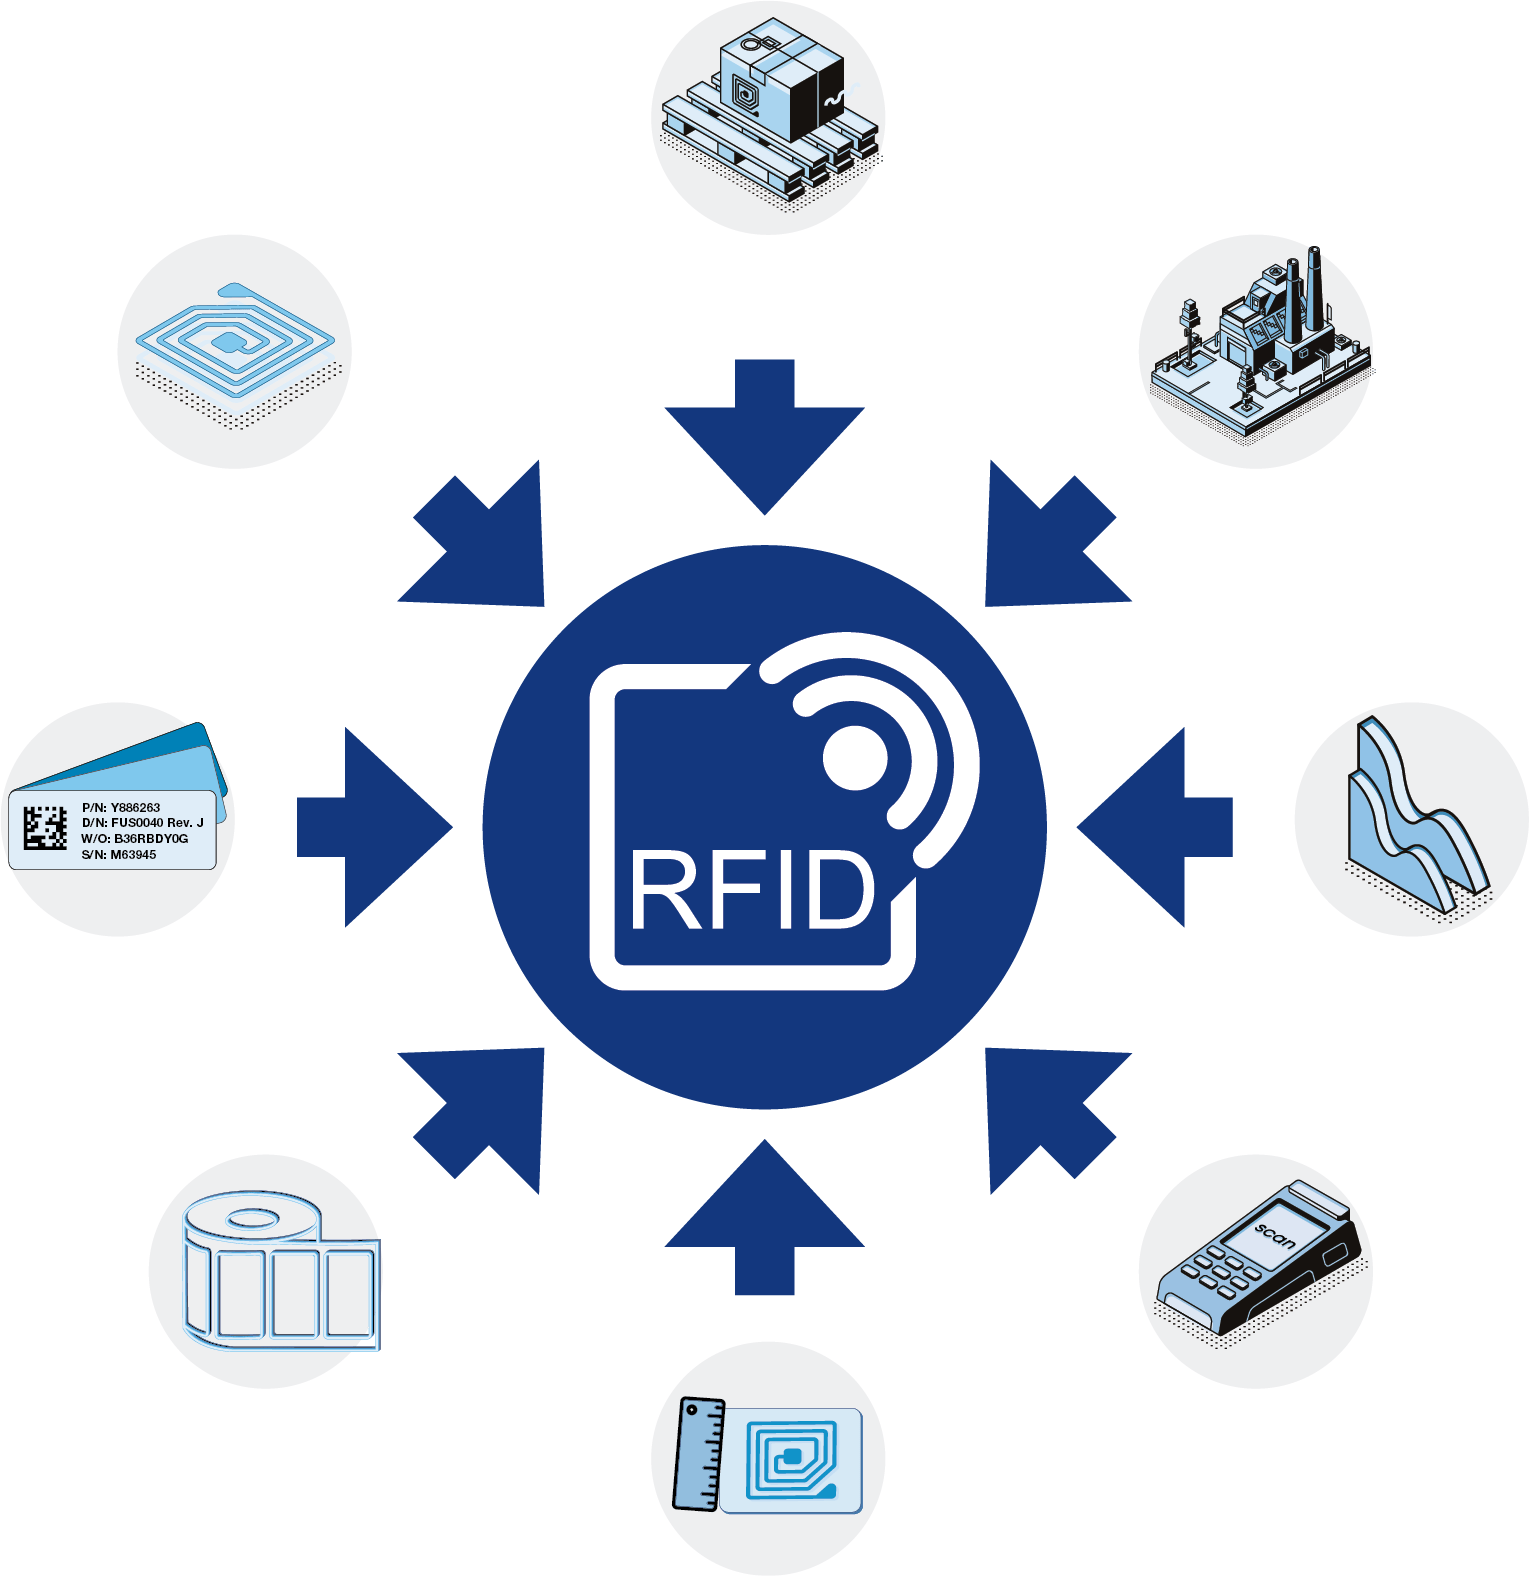 RFID címke és tag működése